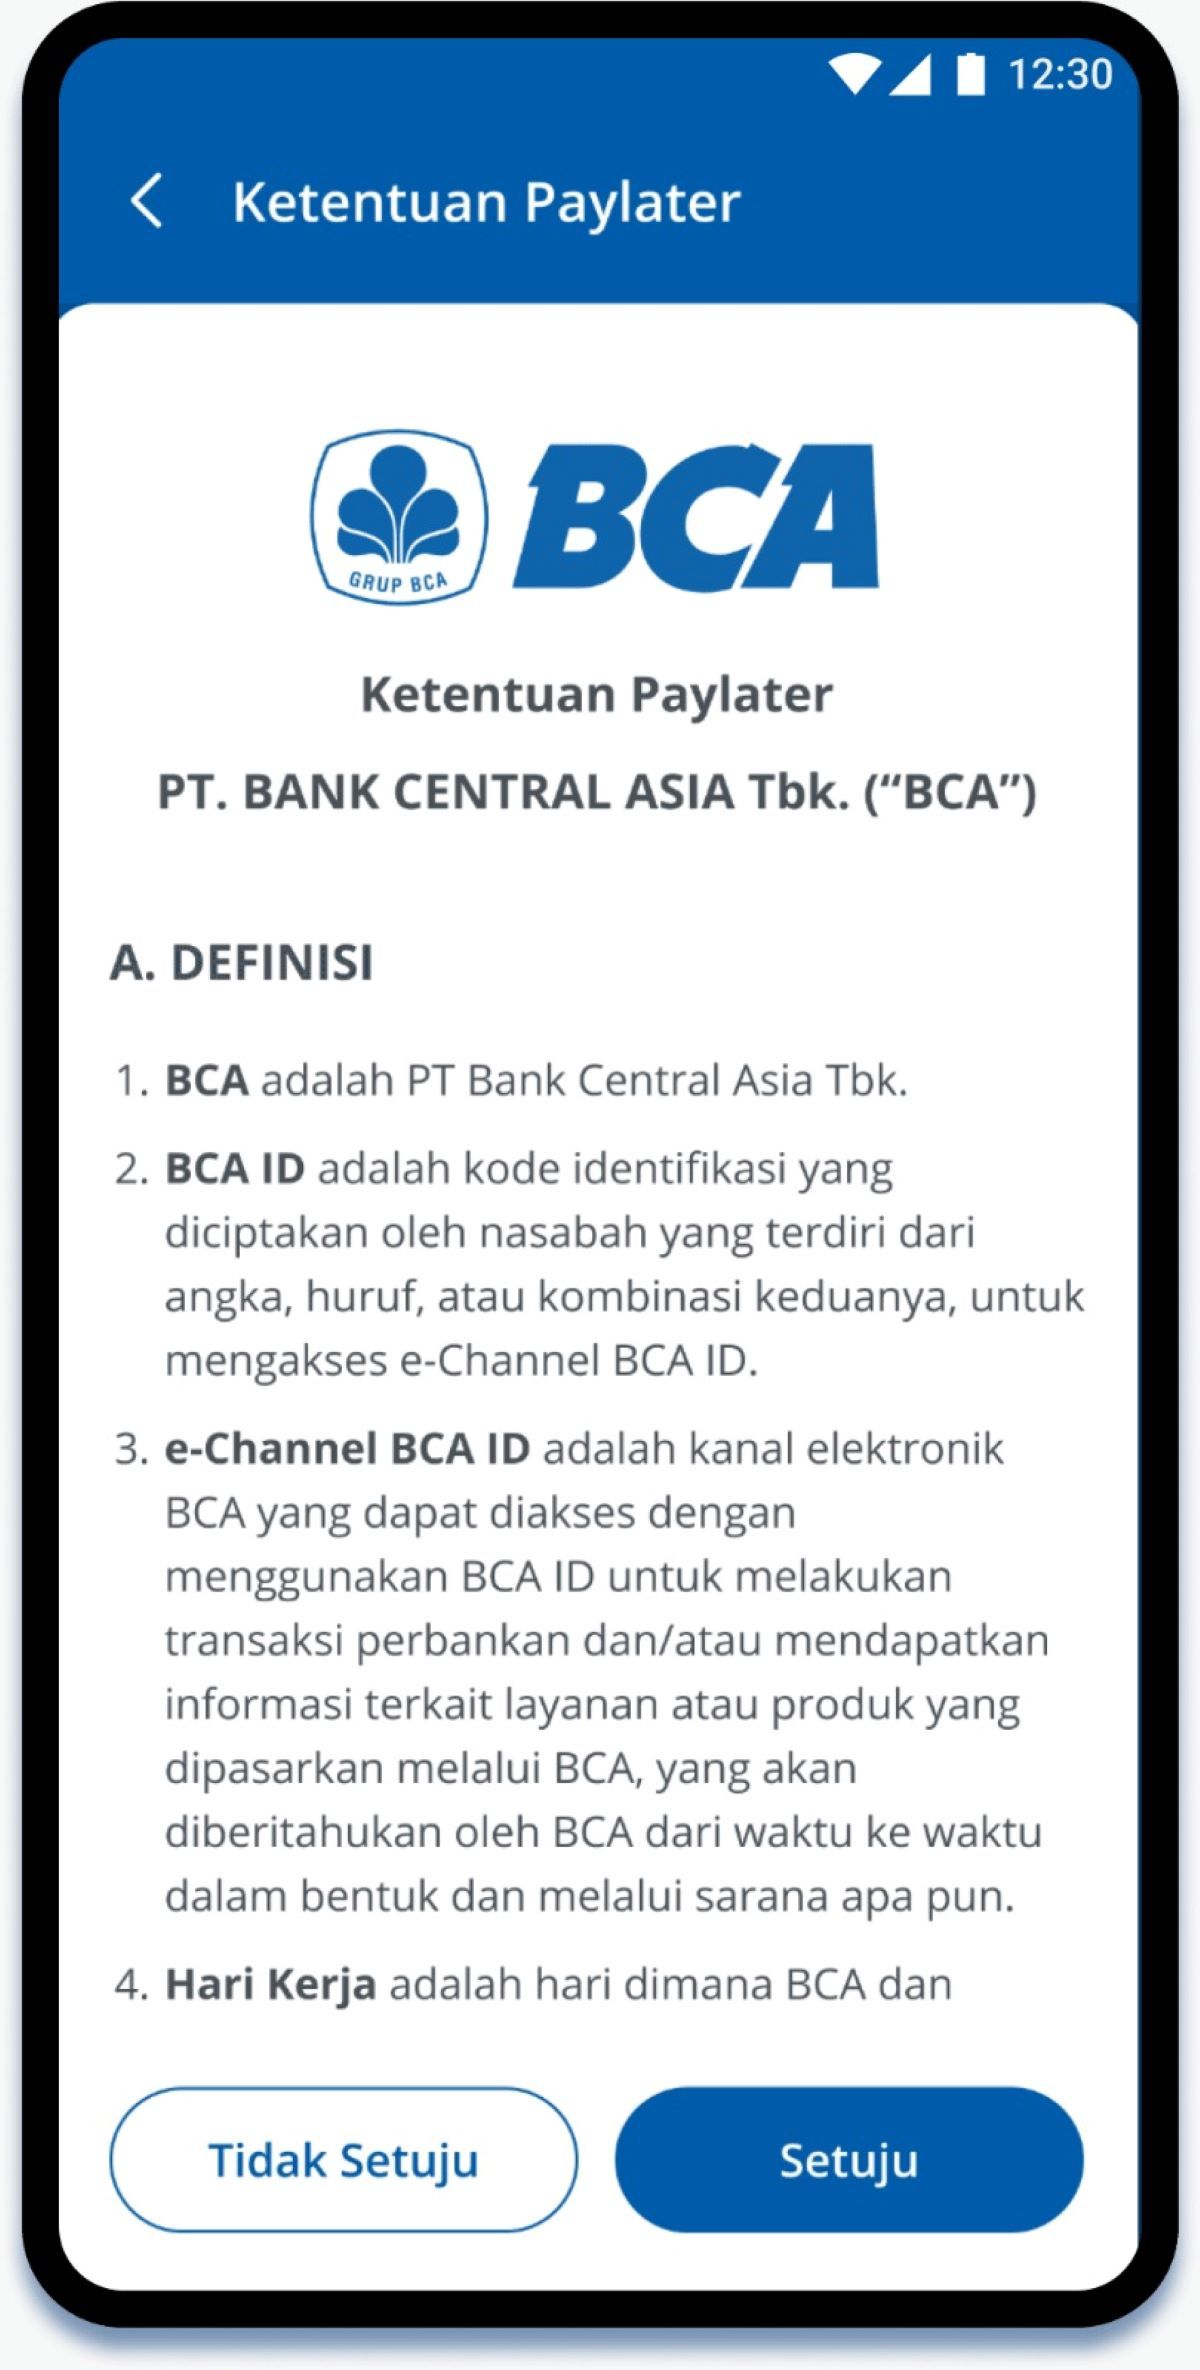 Syarat ketentuan penggunaan paylater BCA